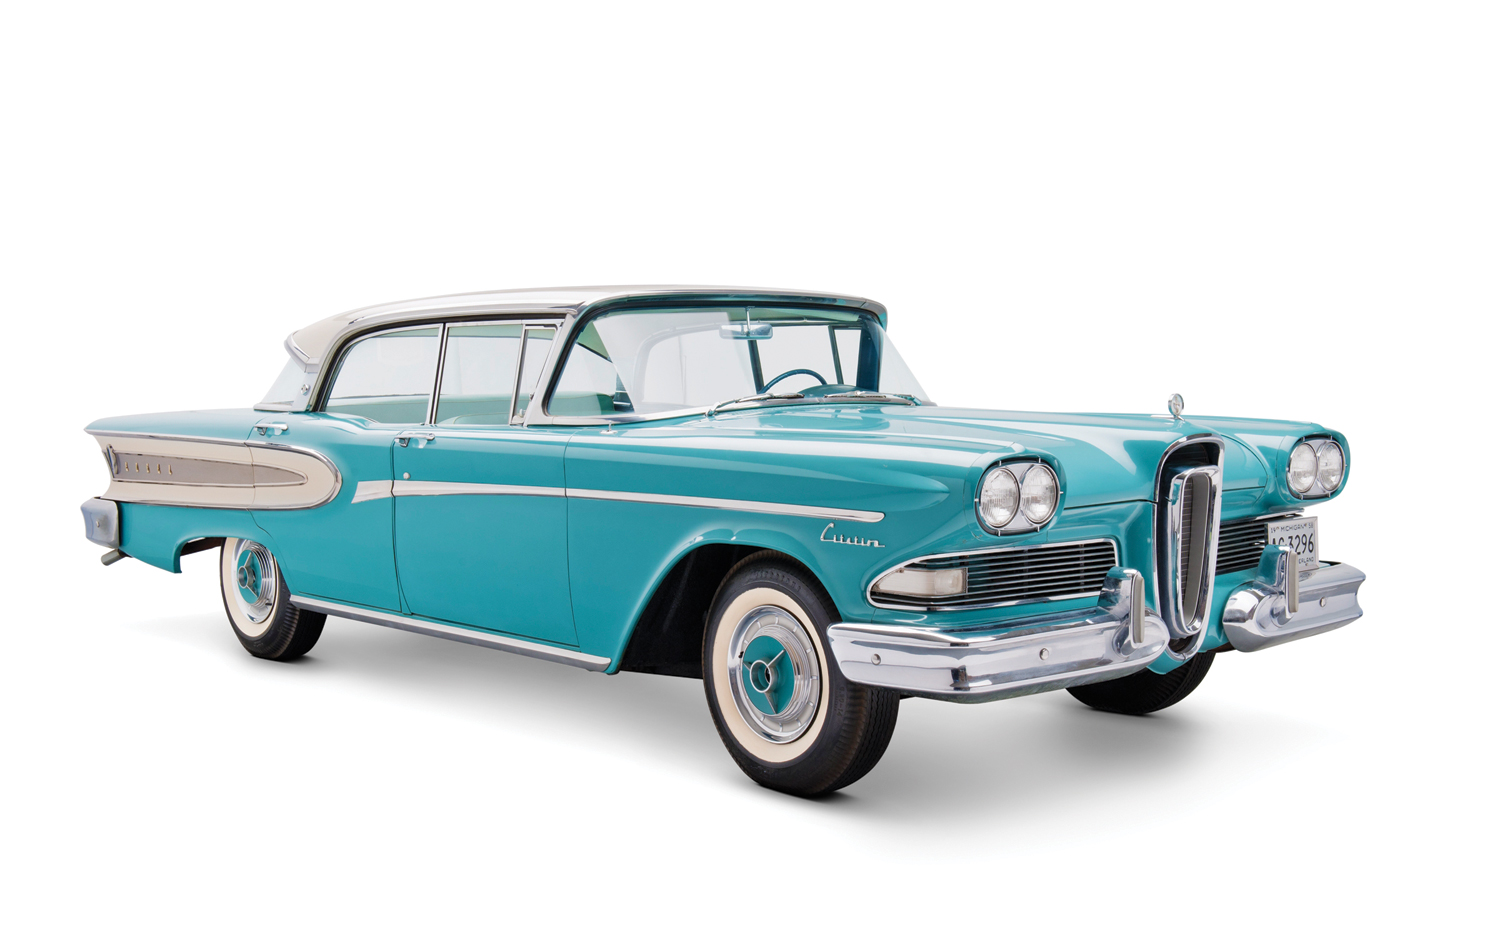 8 novembre 1956 – Ford choisi le nom Edsel pour un nouveau modèle